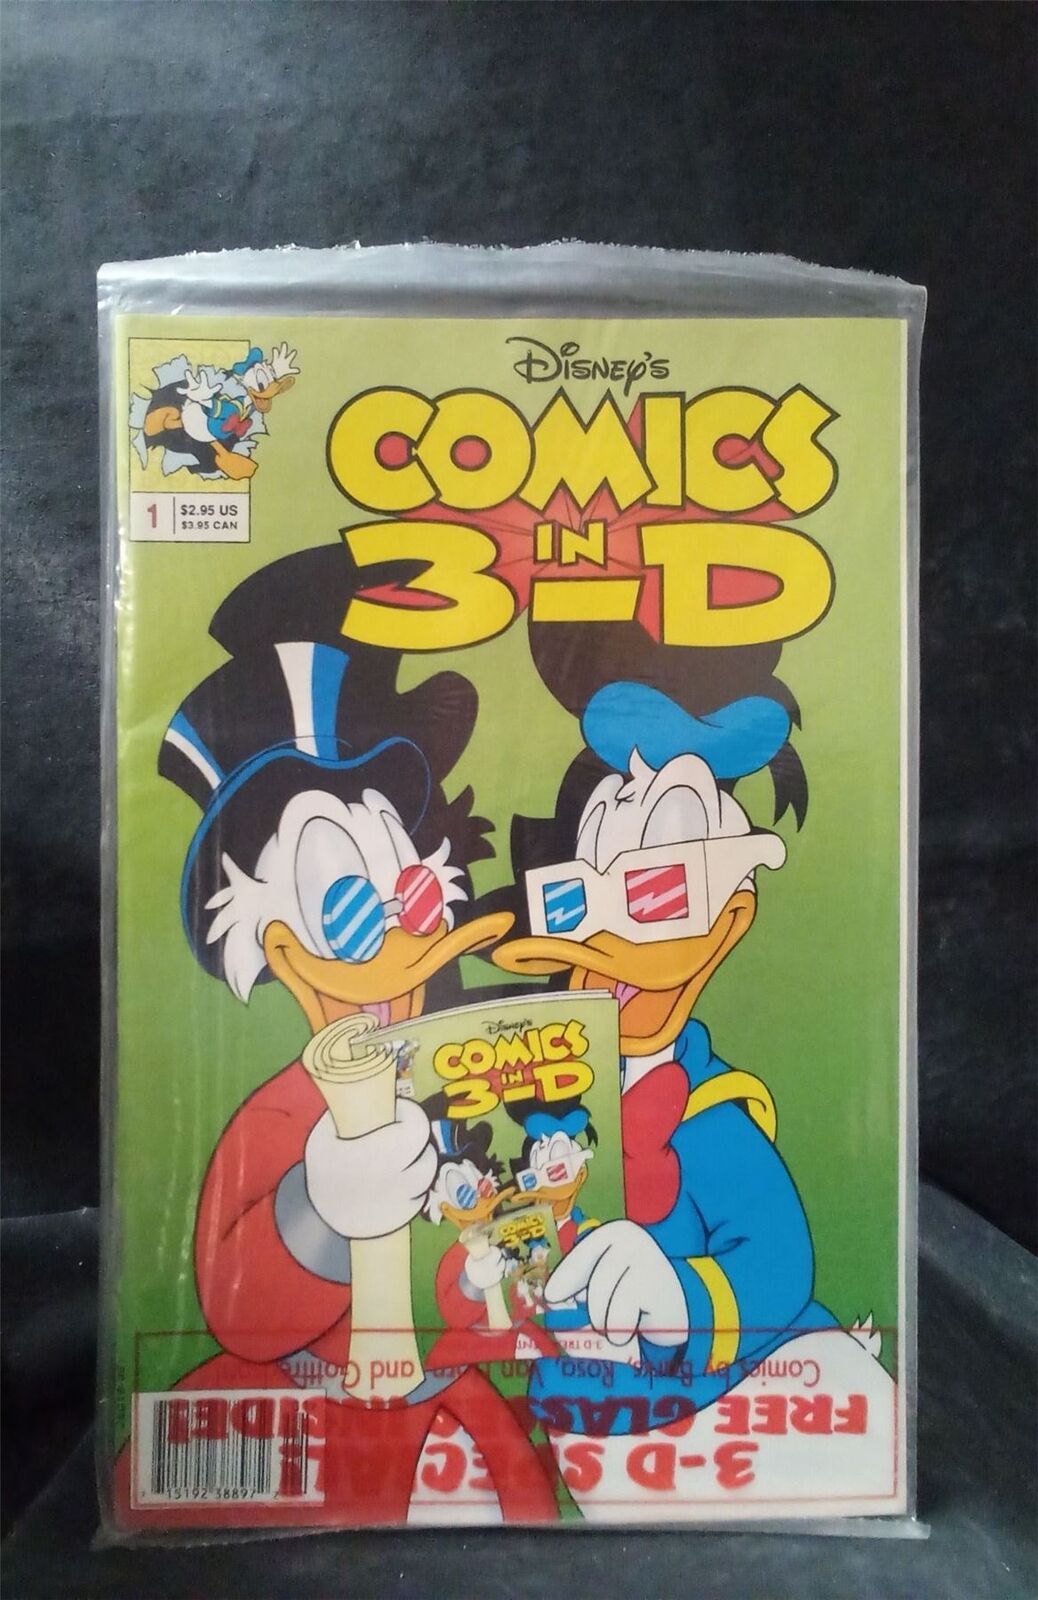 Disney's Comics in 3-D *sealed* 1992 disney Comic Book 